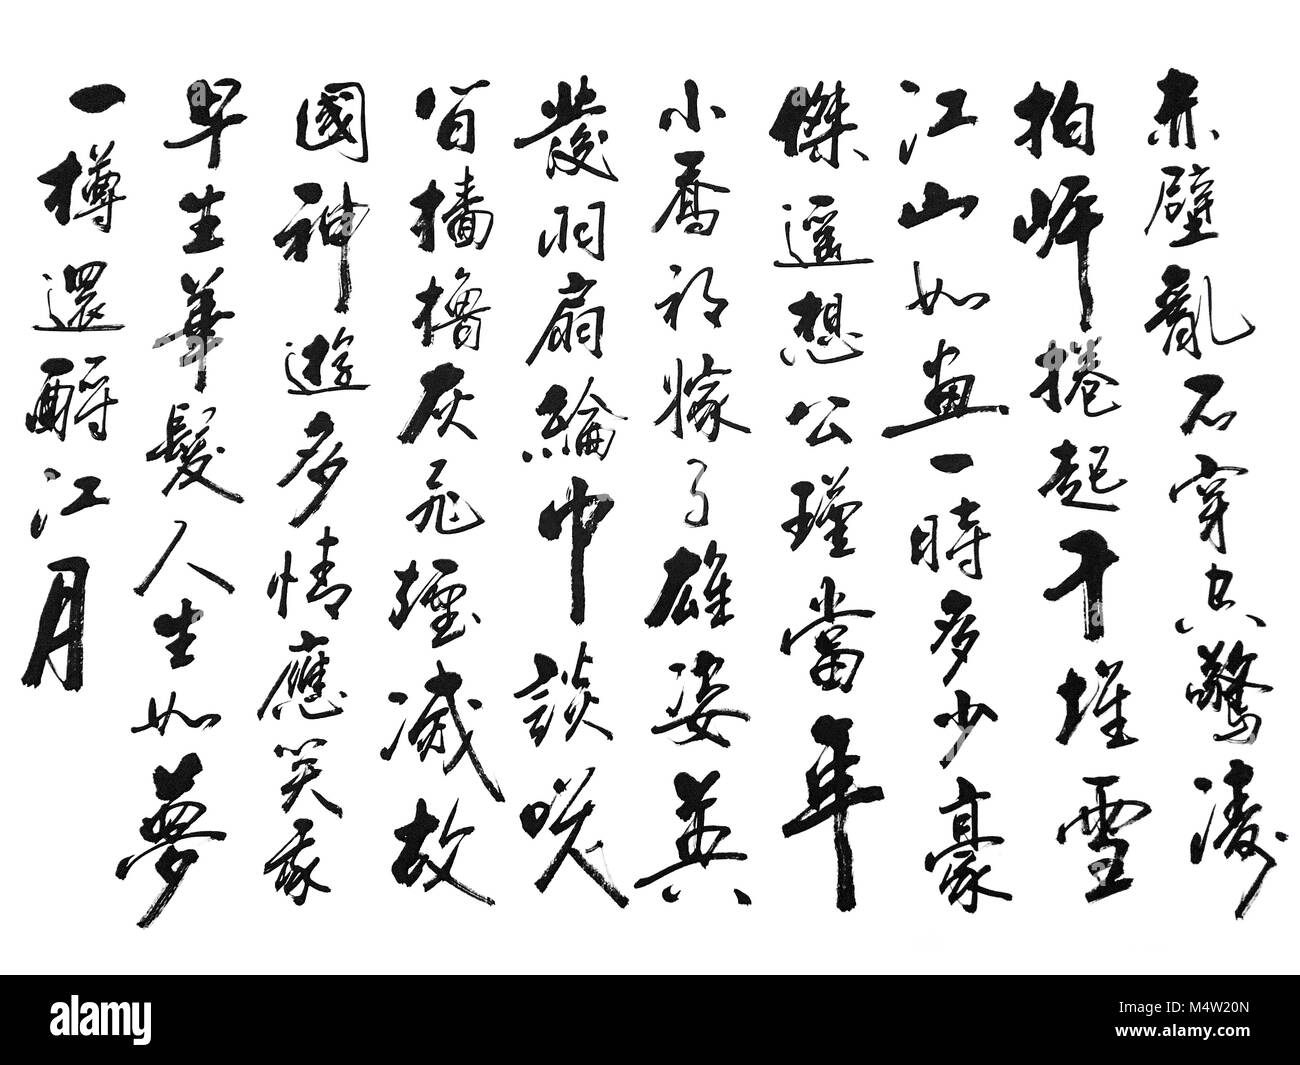 Une photo d'un document papier avec de nombreux symboles traditionnels chinois écrit par une technique de calligraphie. Banque D'Images